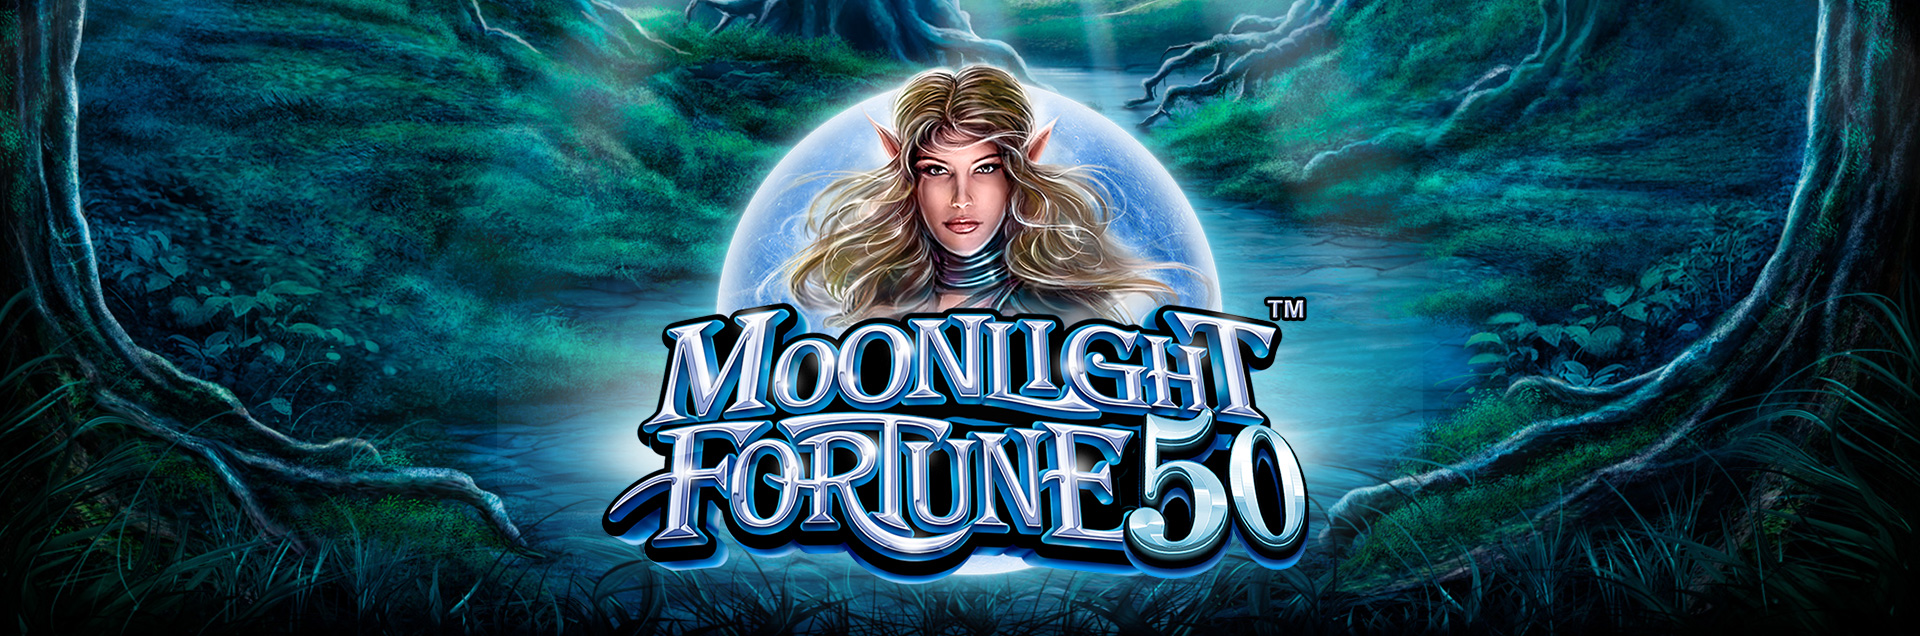 MoonlightFortune 50 header games logo